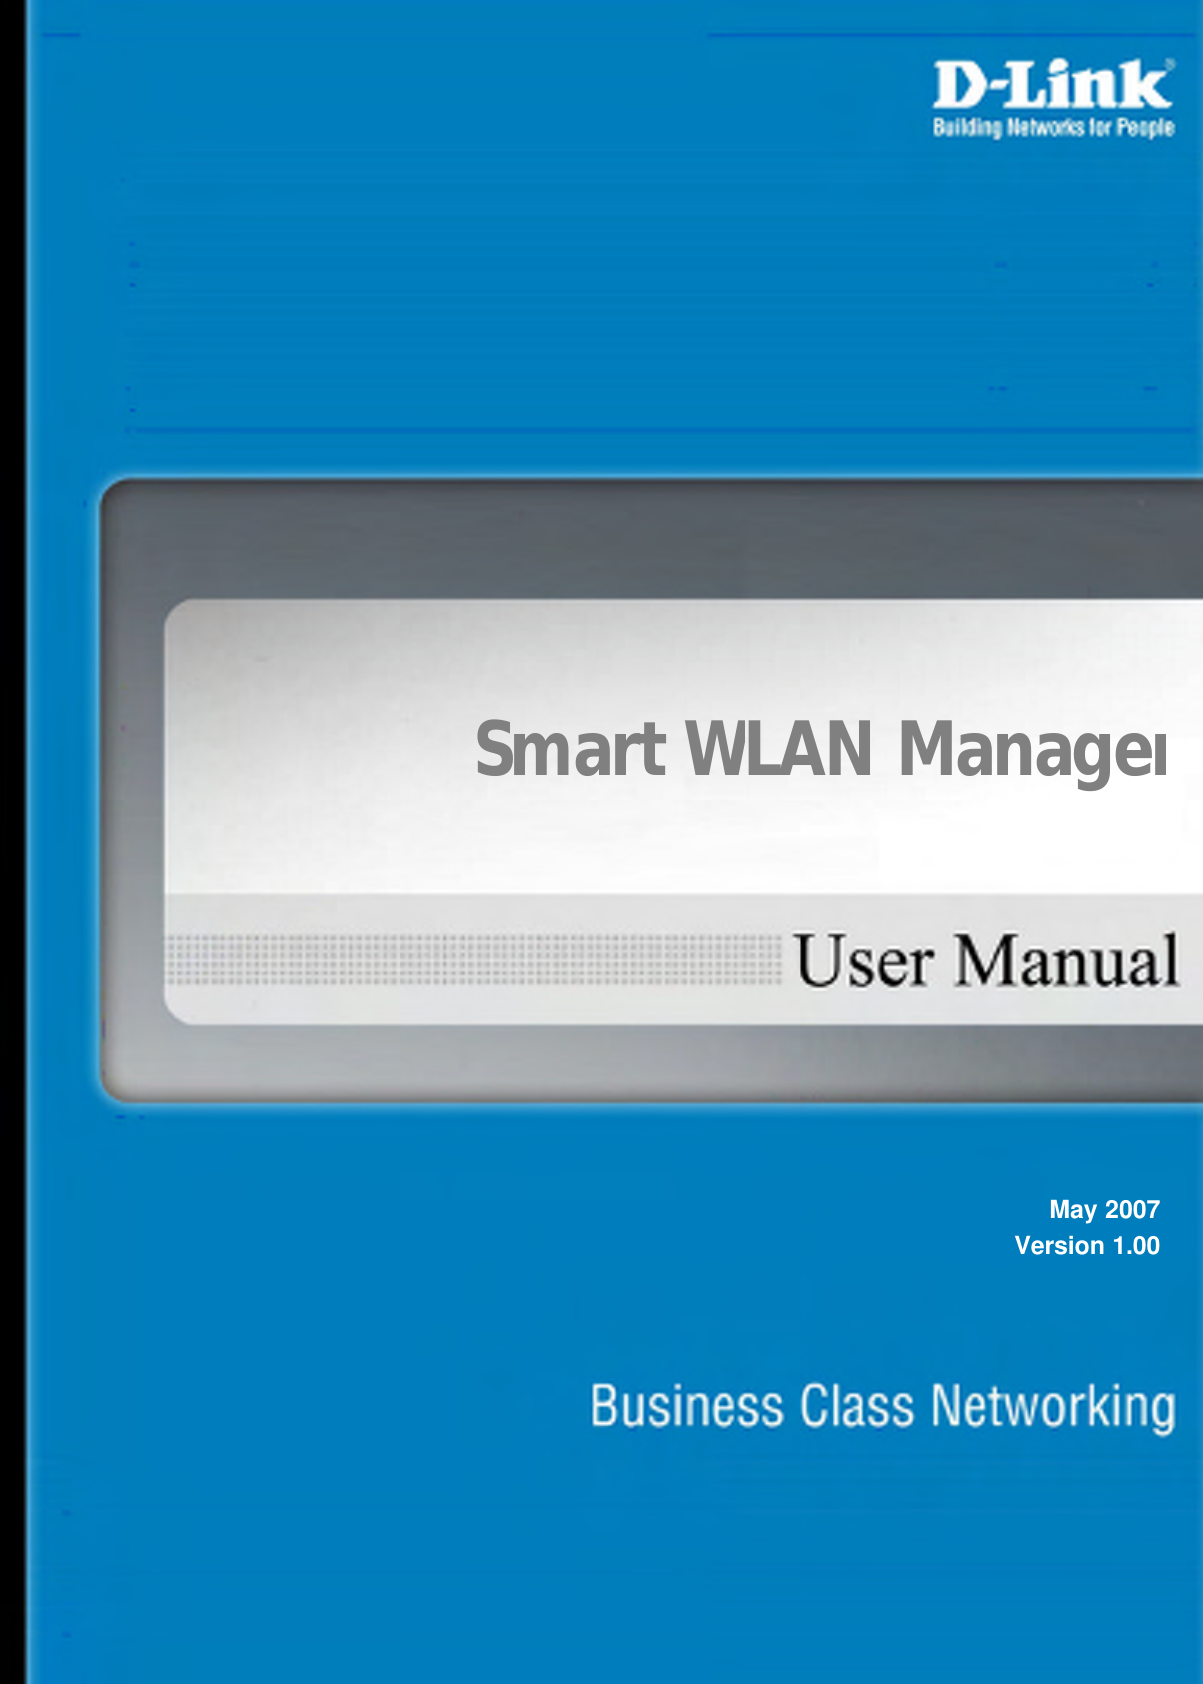                          Smart WLAN ManagerMay 2007 Version 1.00 